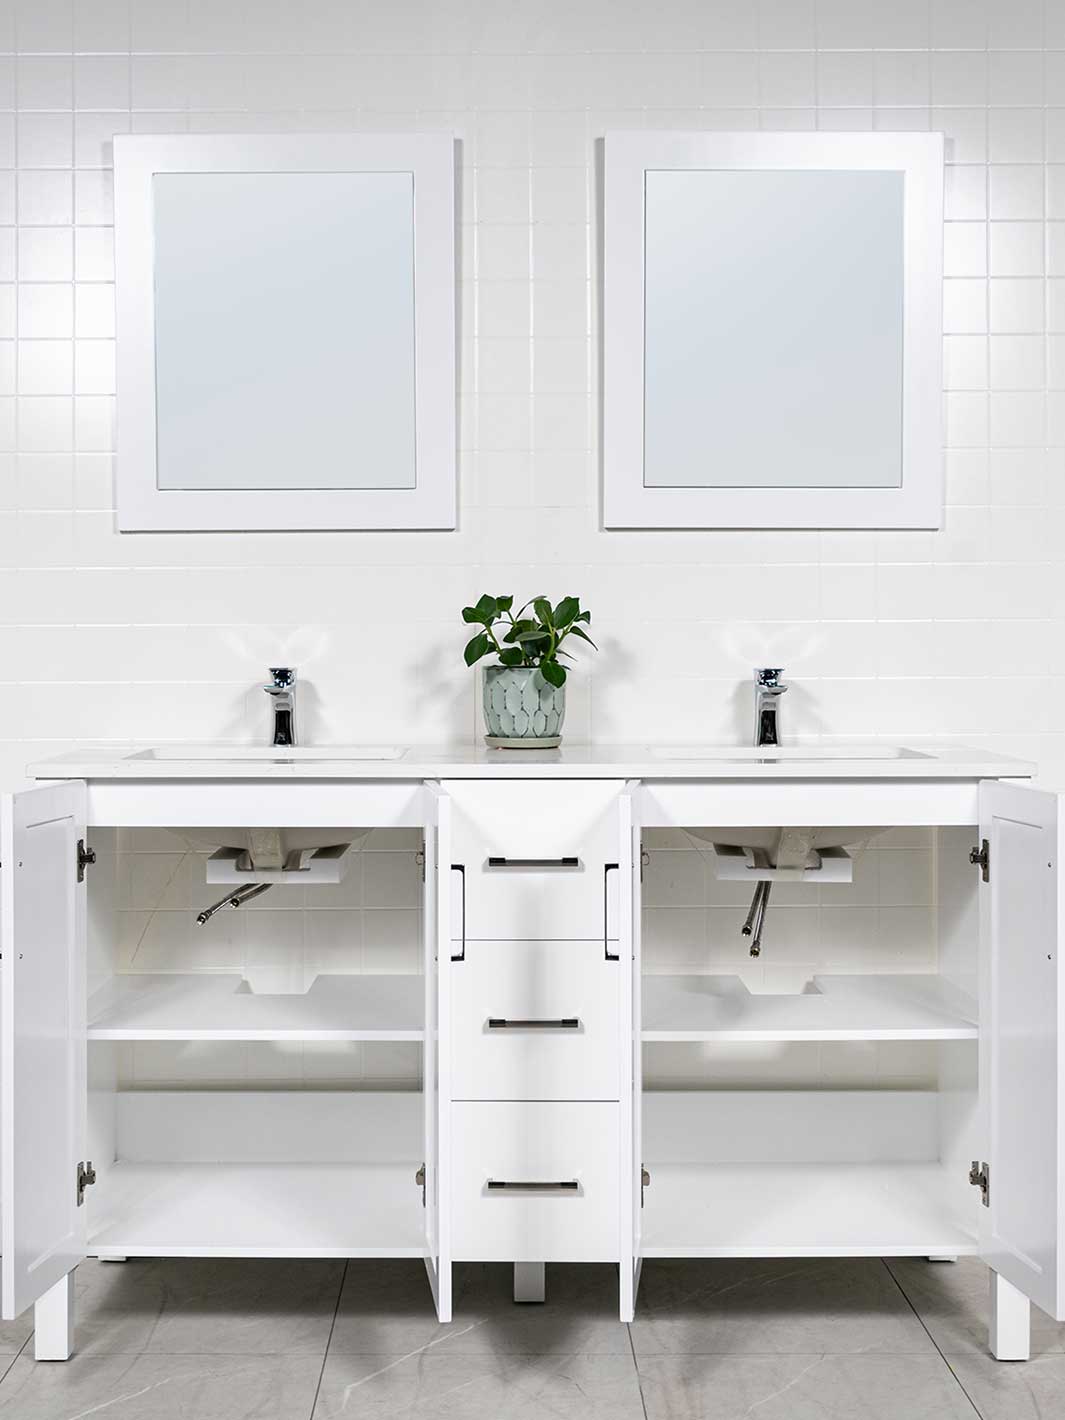 Open cupboards with shelf under each sink